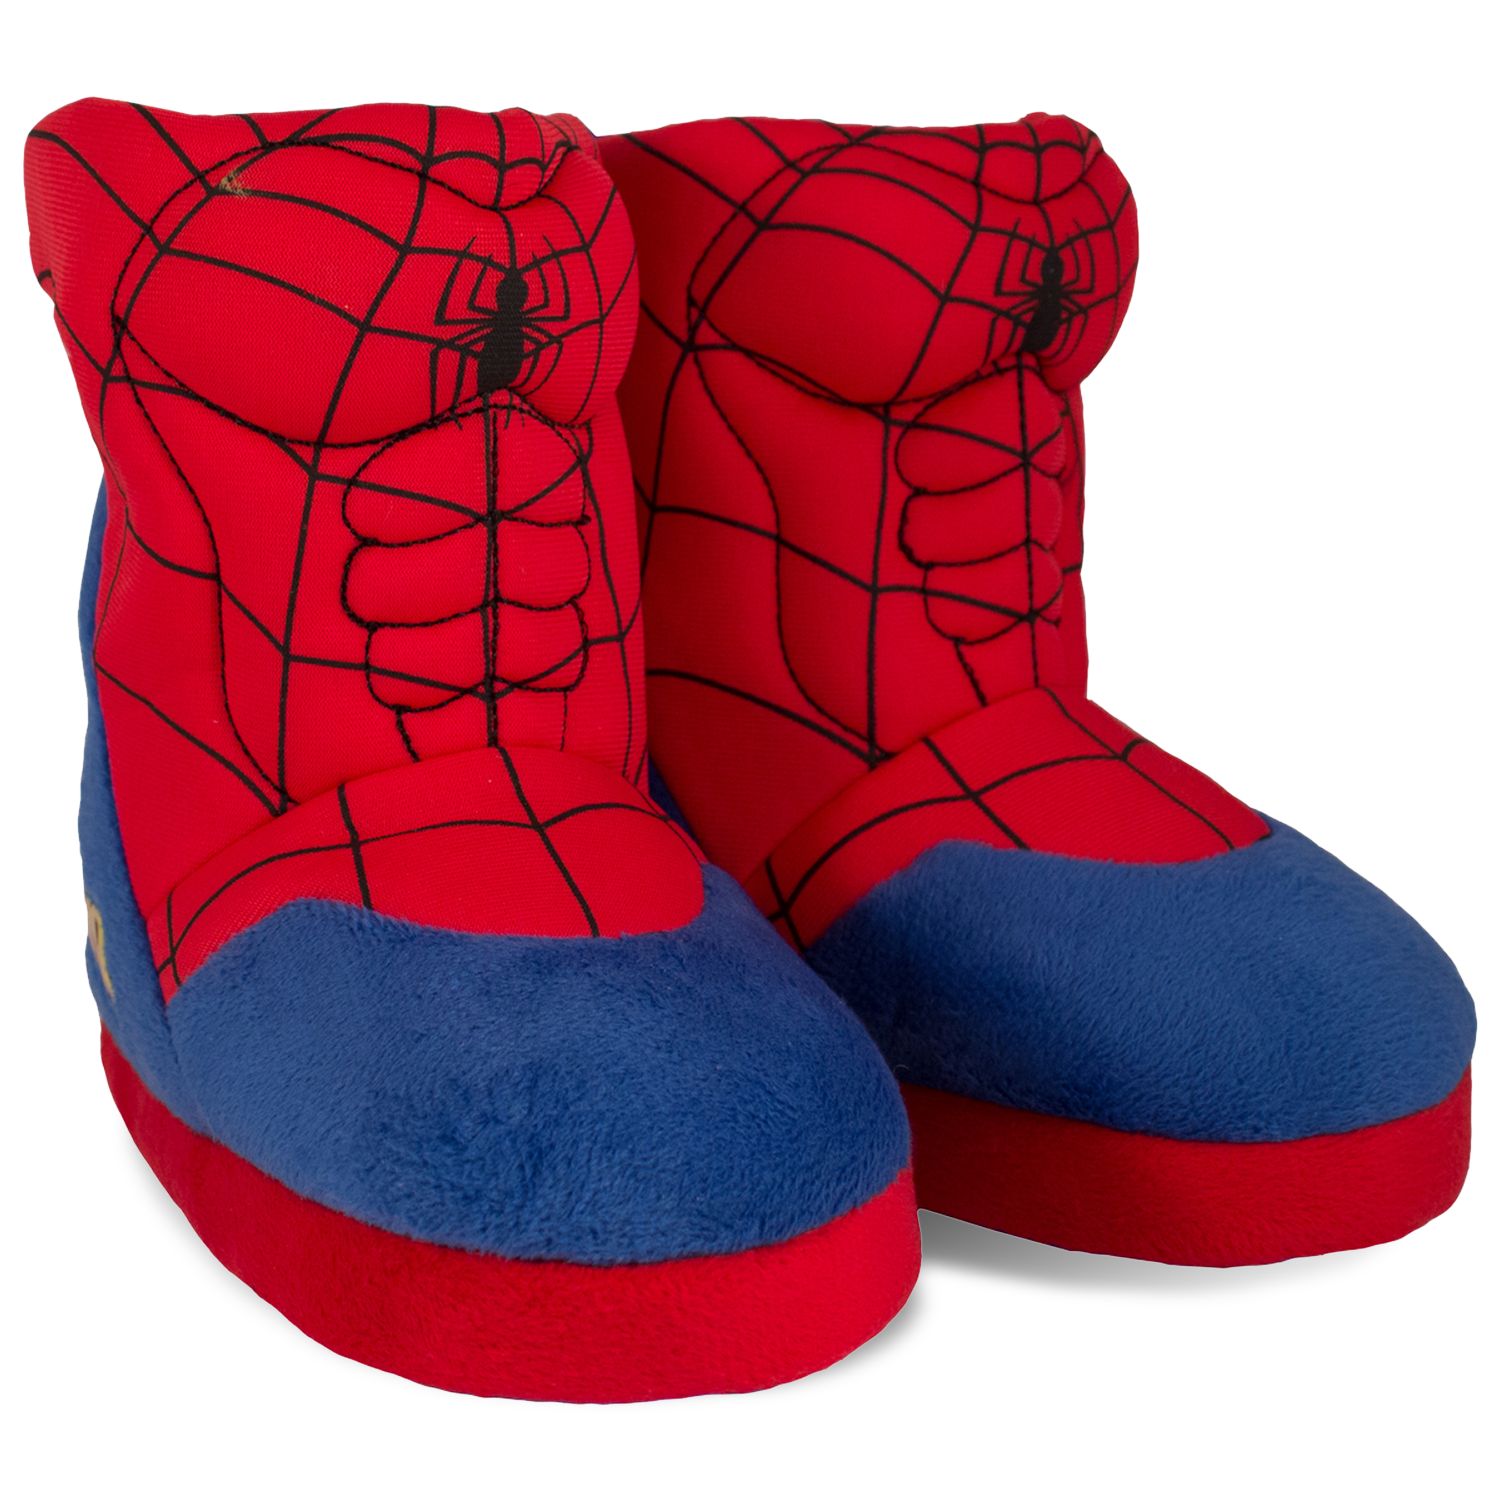 Marvel Spider-Man Toddler Boys' Slipper 